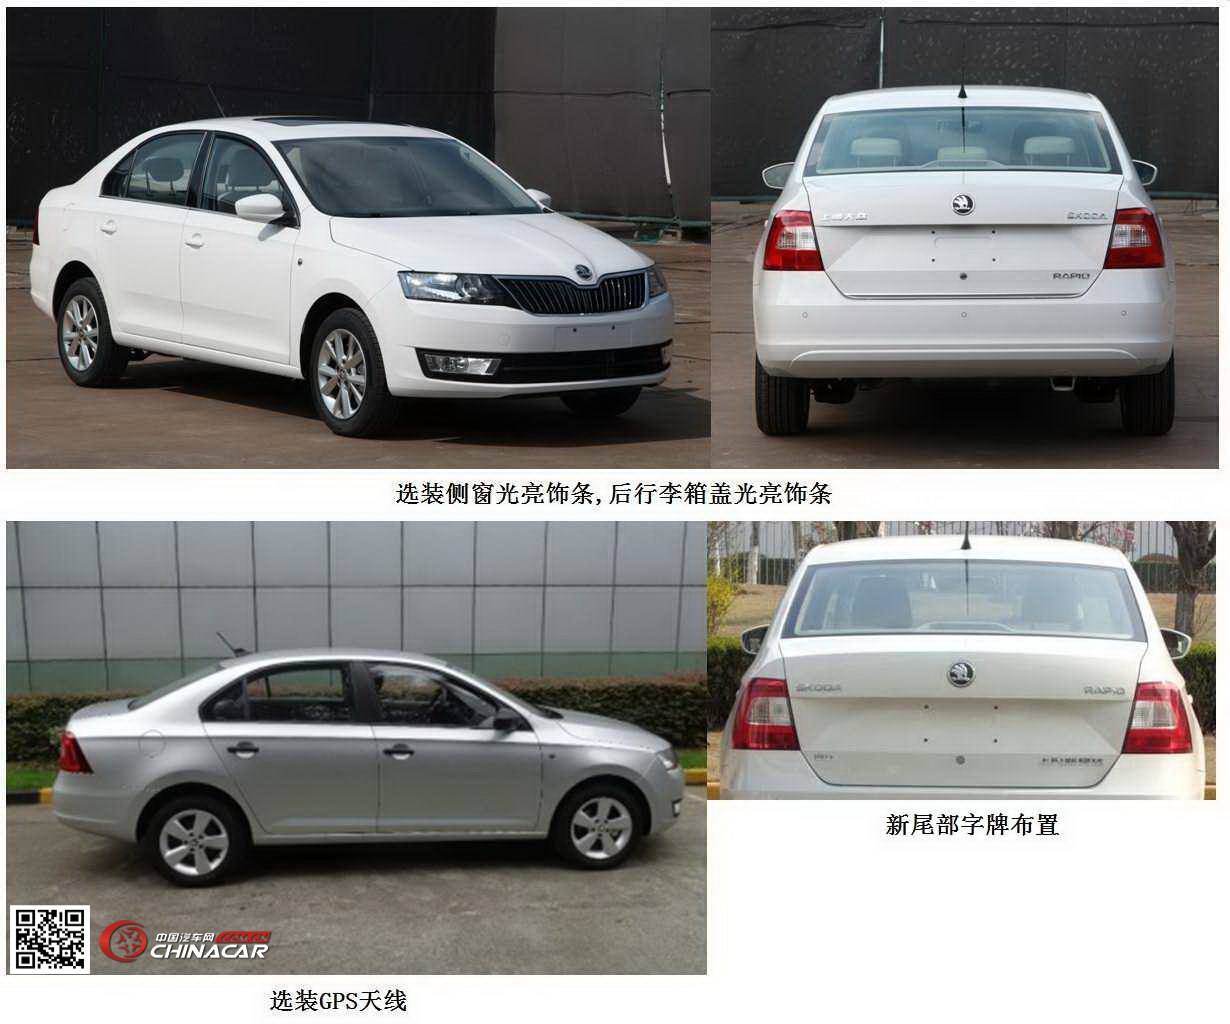 中国汽车网-汽车图片站提供斯柯达牌轿车图片,详细资料及工信部汽车